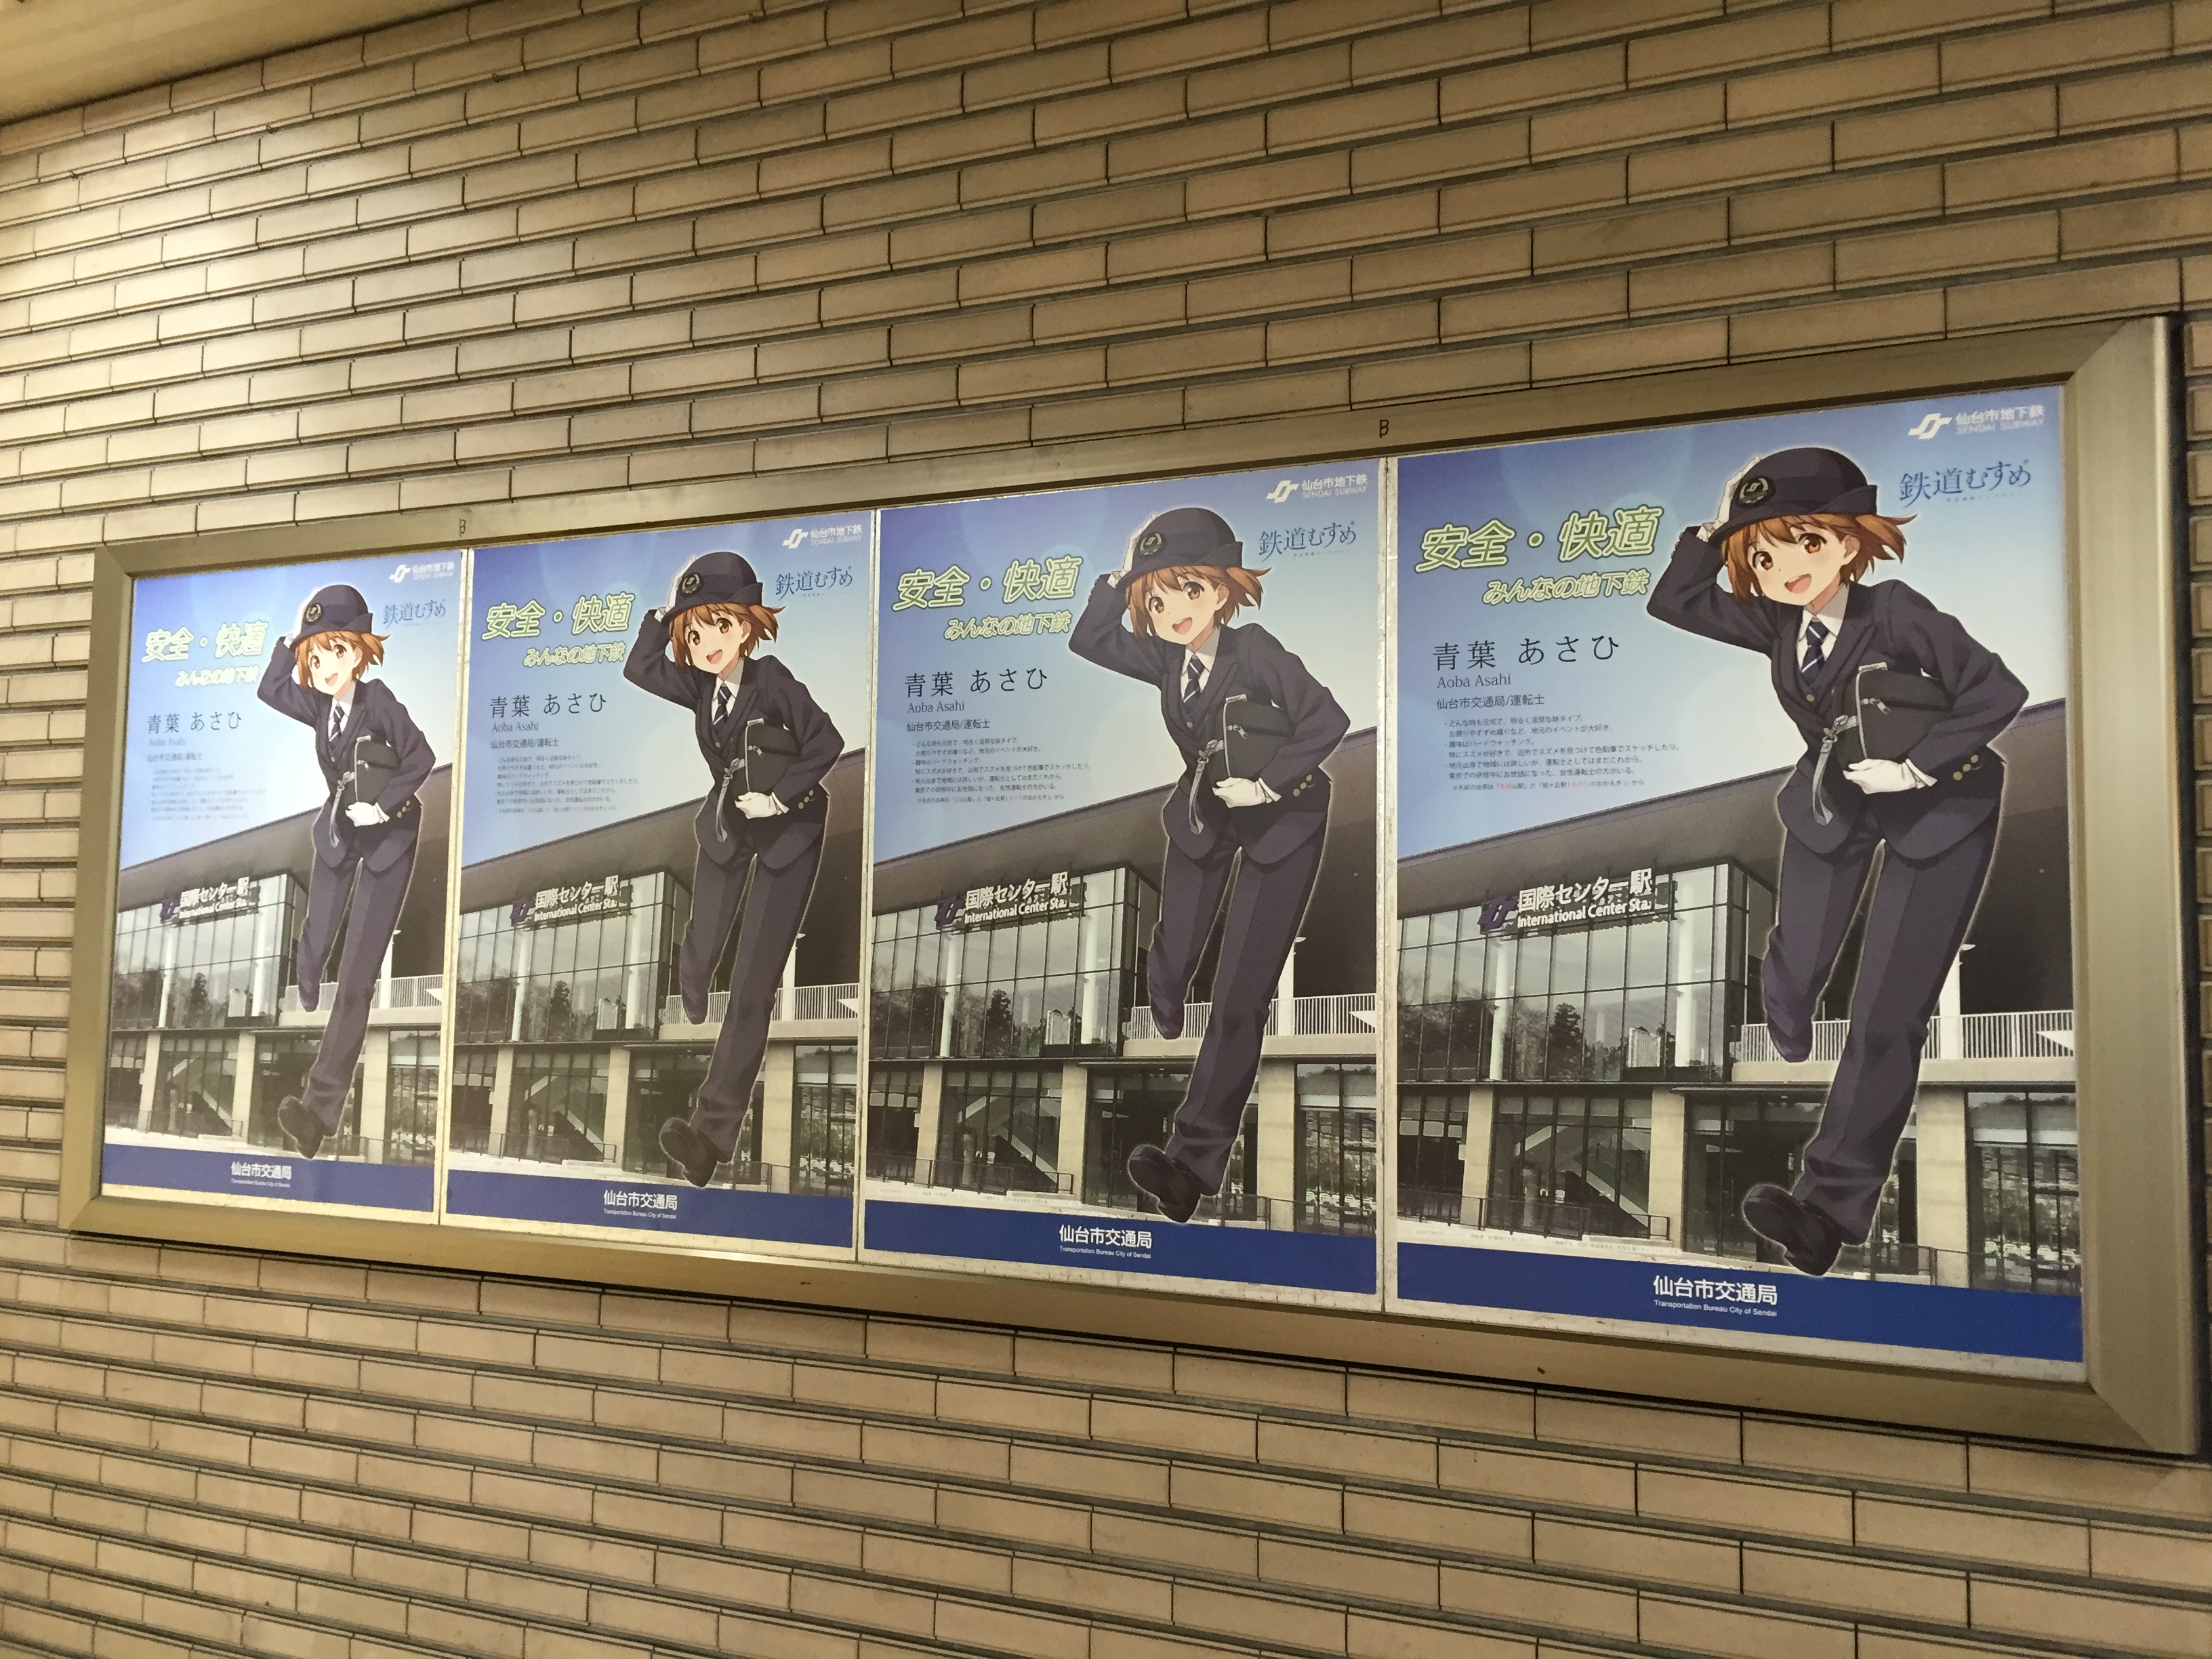 仙台市地下鉄の壁に4枚並ぶ「仙台市地下鉄 鉄道むすめ 青葉あさひ 仙台市交通局/運転士」のポスター